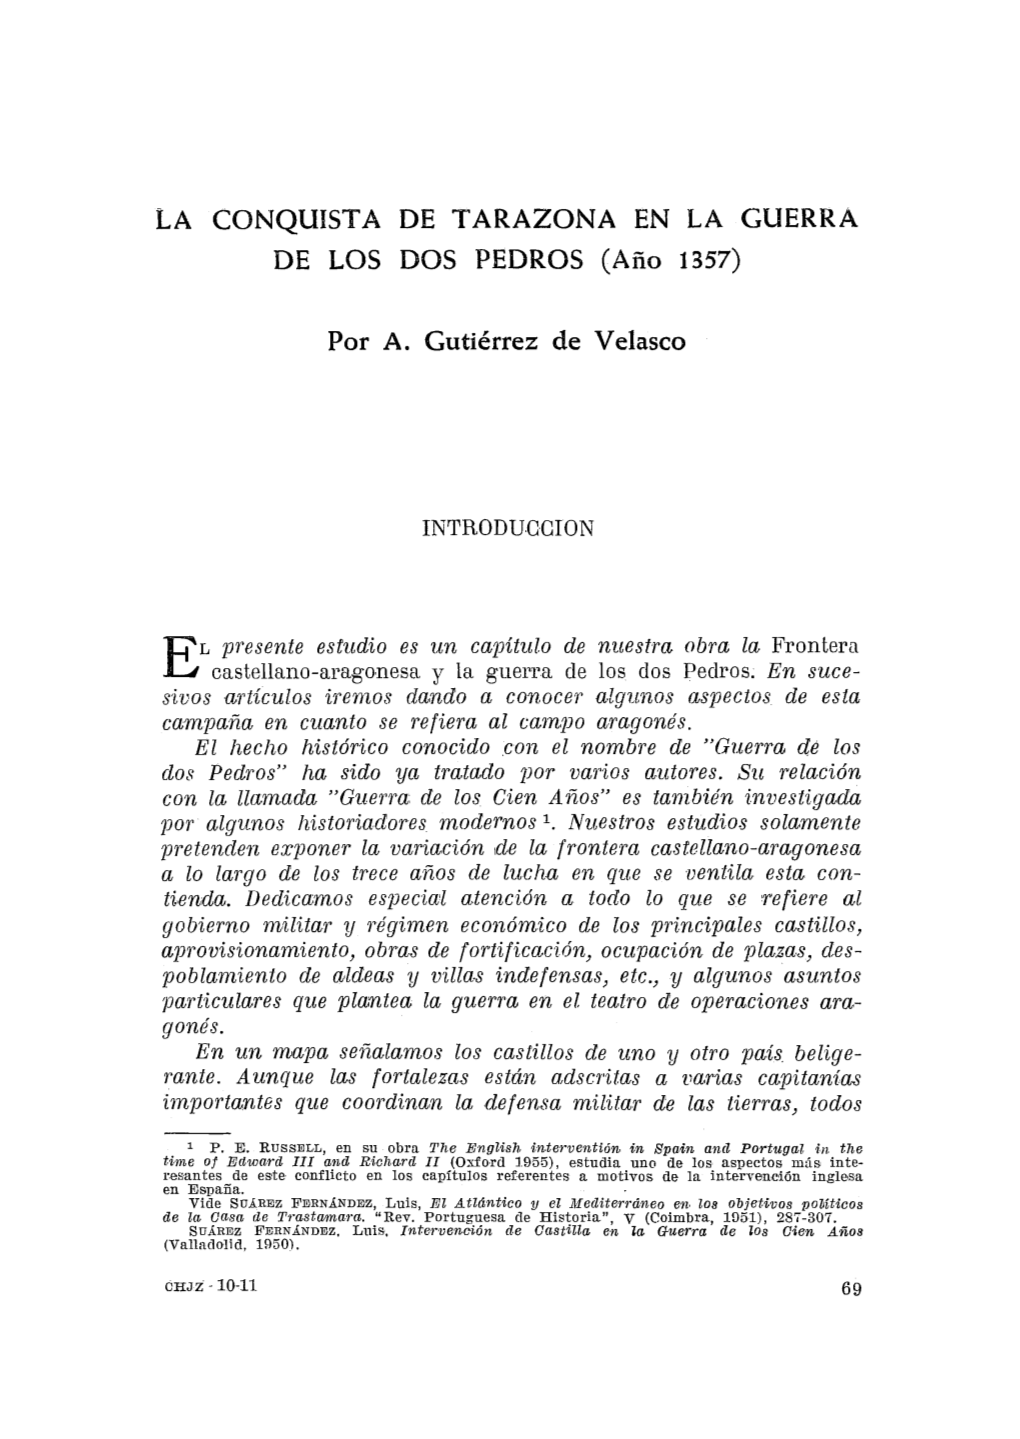 2. Gutiérrez De Velasco, Antonio, La Conquista De Tarazona En La Guerra De Los Dos Pedros